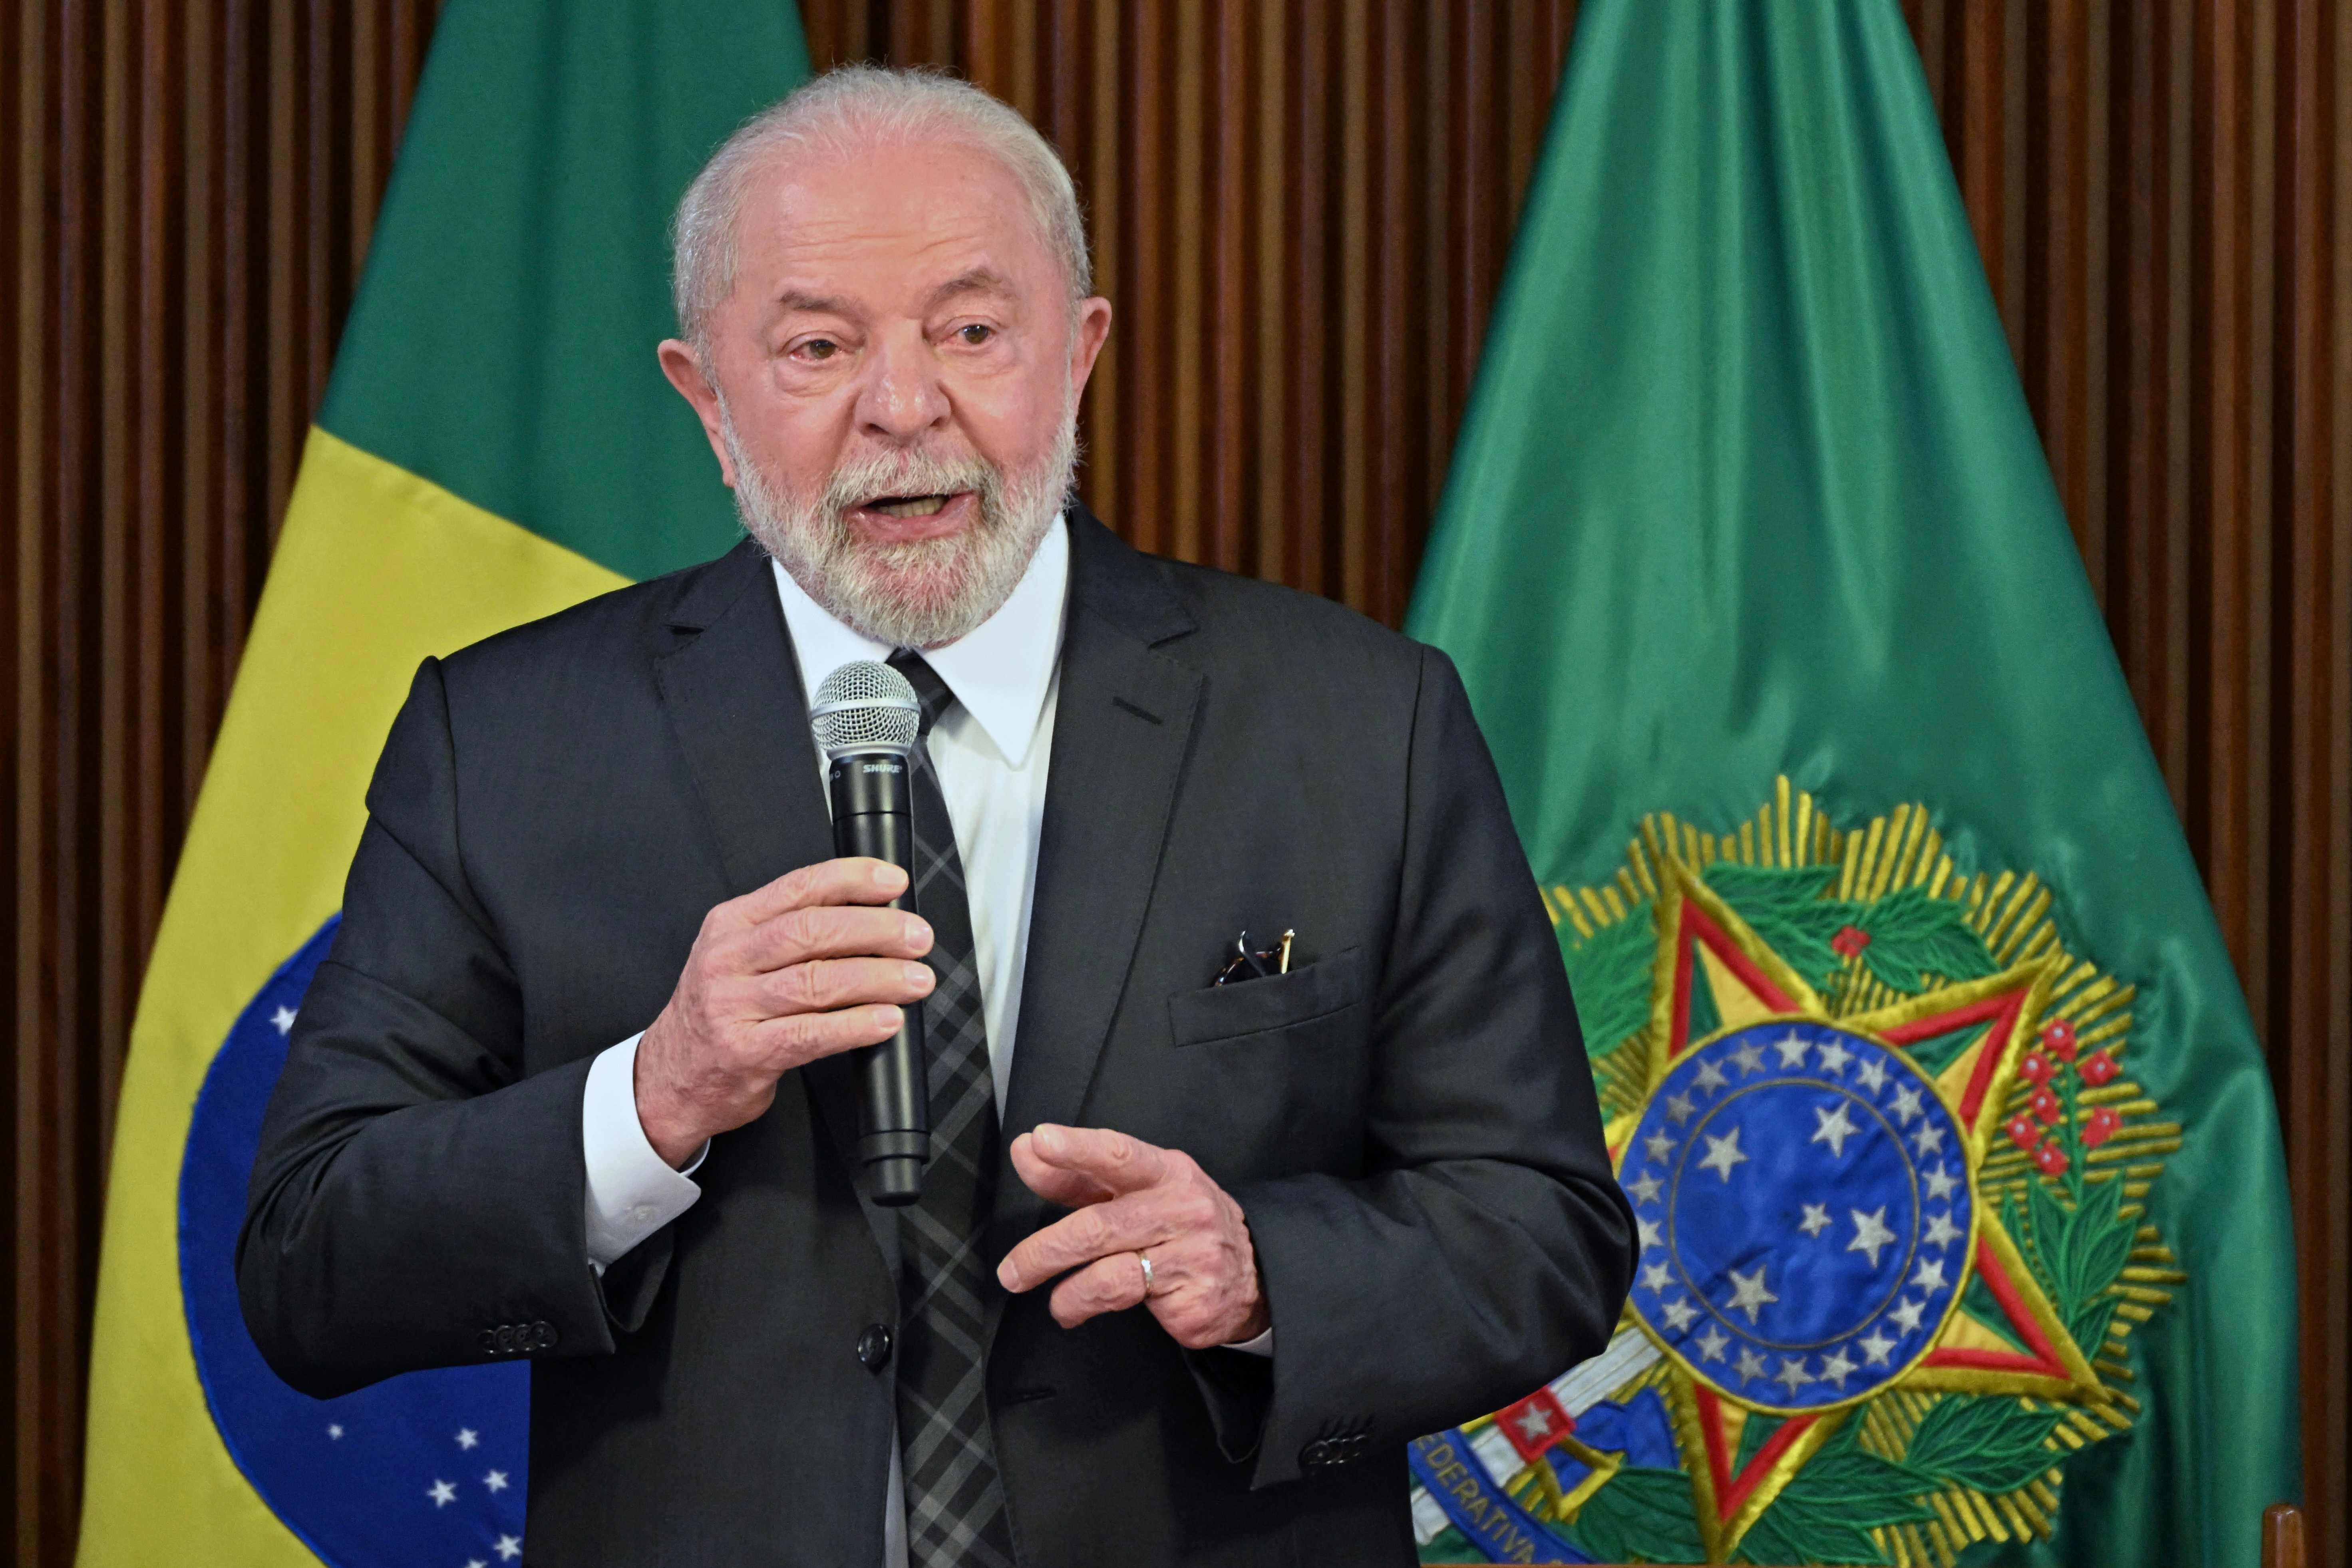 Lula e prefeito de Campinas batem boca por causa de casas de 15 m²